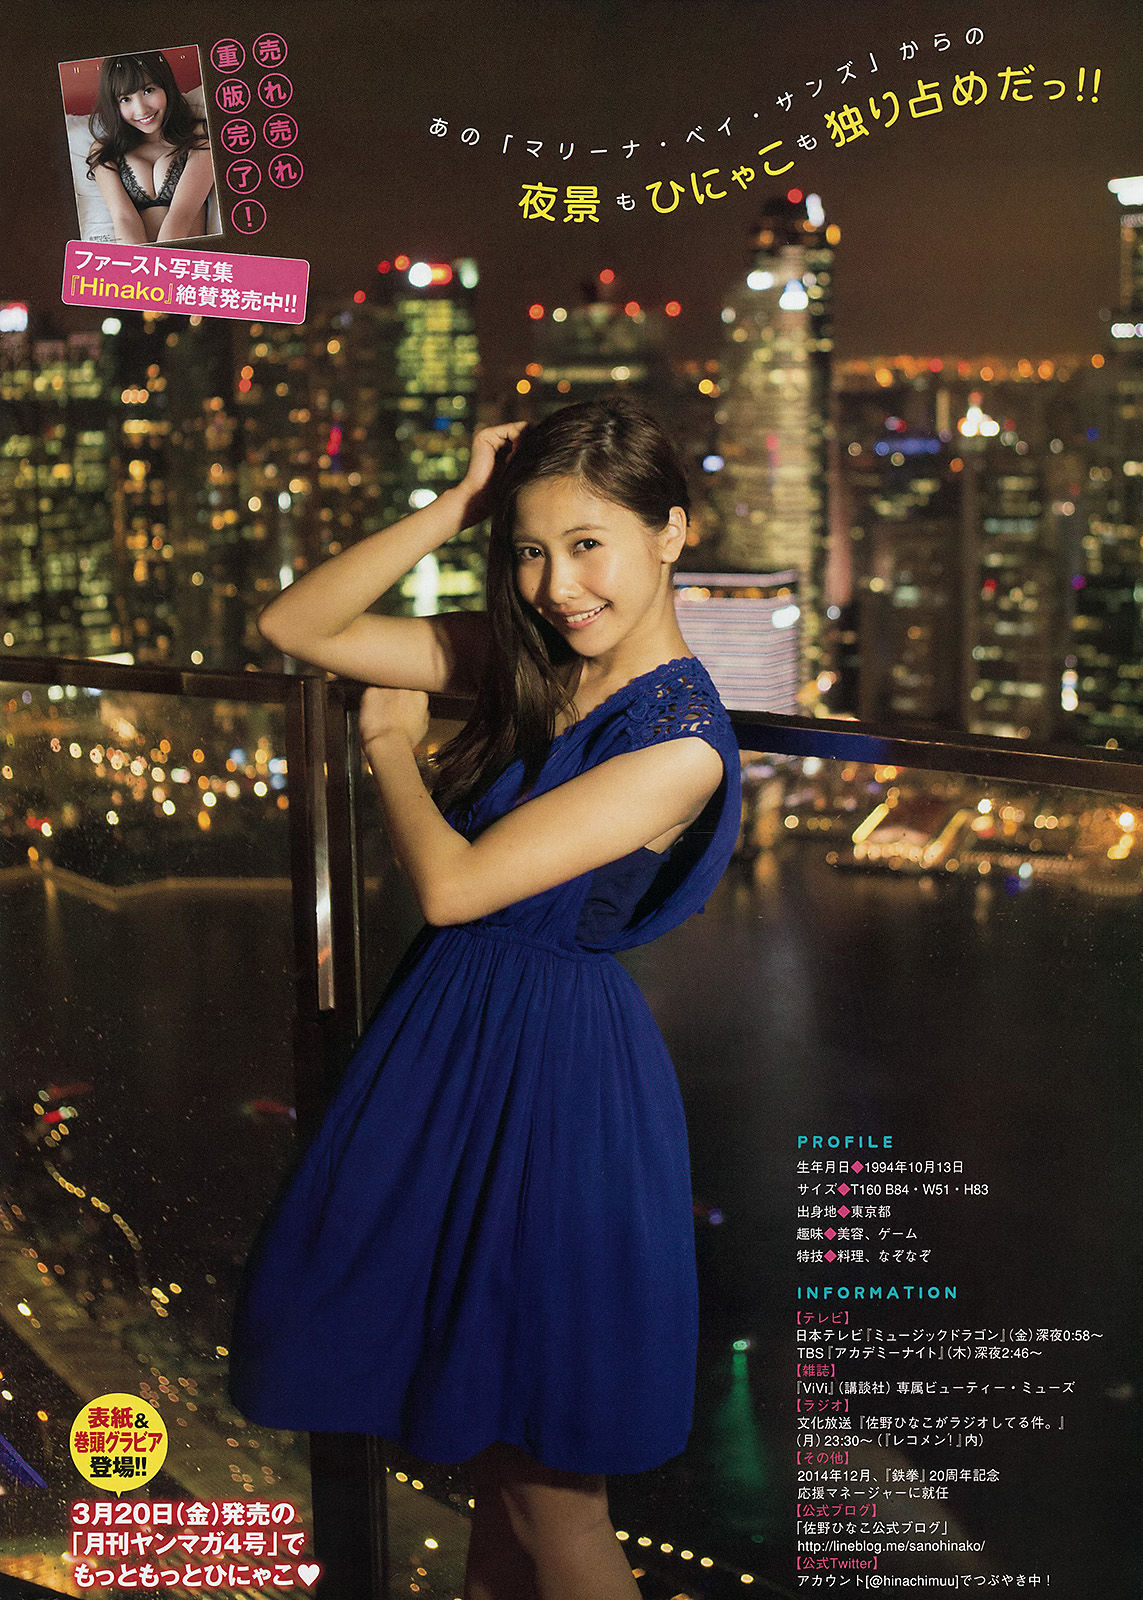 [Young Magazine] Maggie Hinako Sano 2015 No.14 Photograph Page 1 No.596863